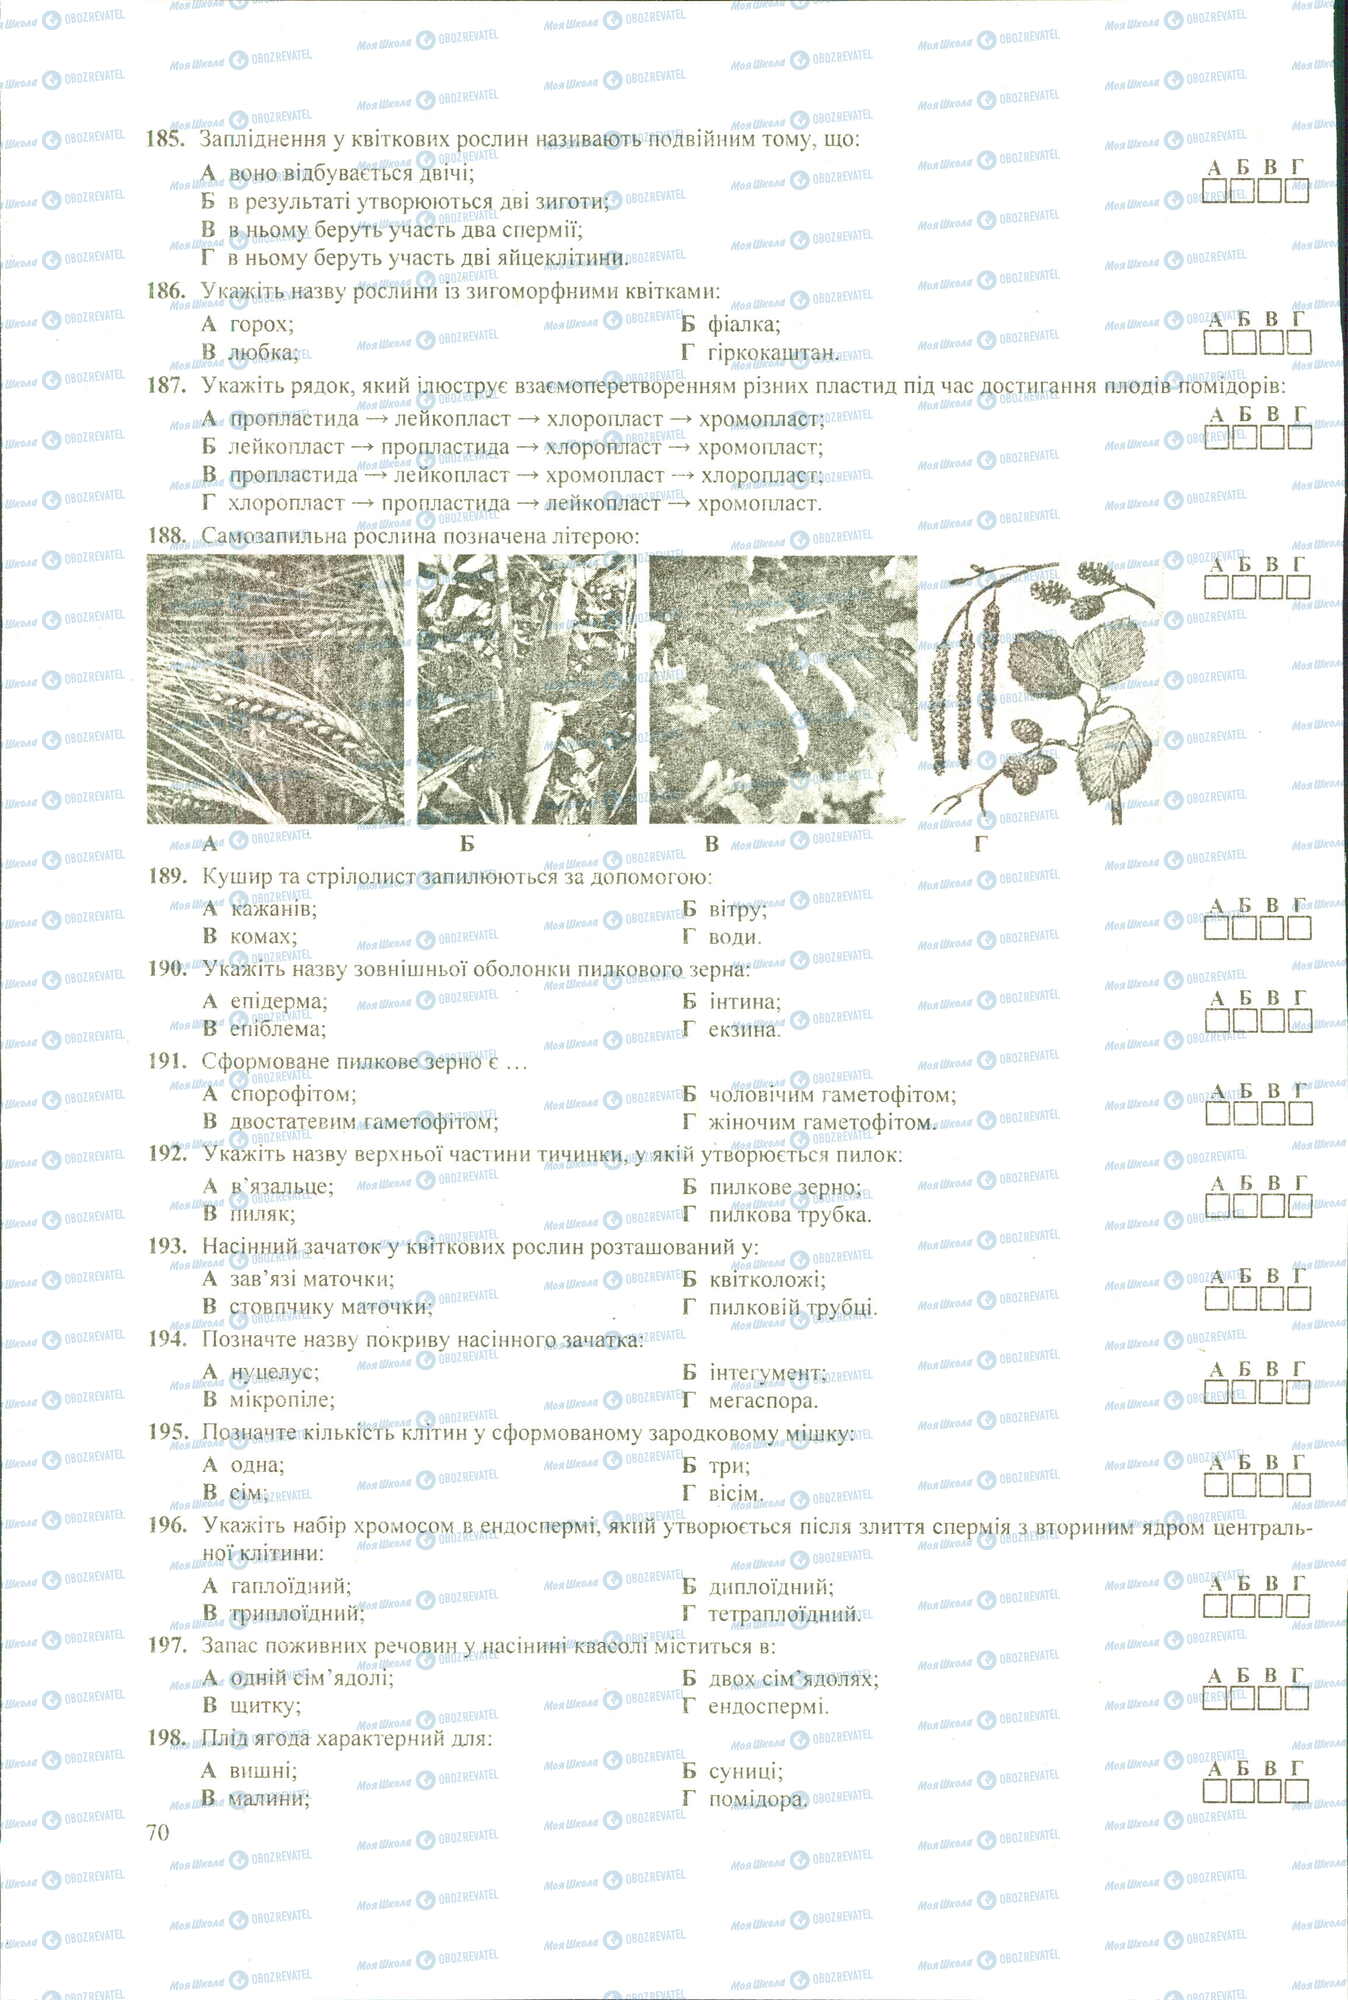 ЗНО Биология 11 класс страница 185-198